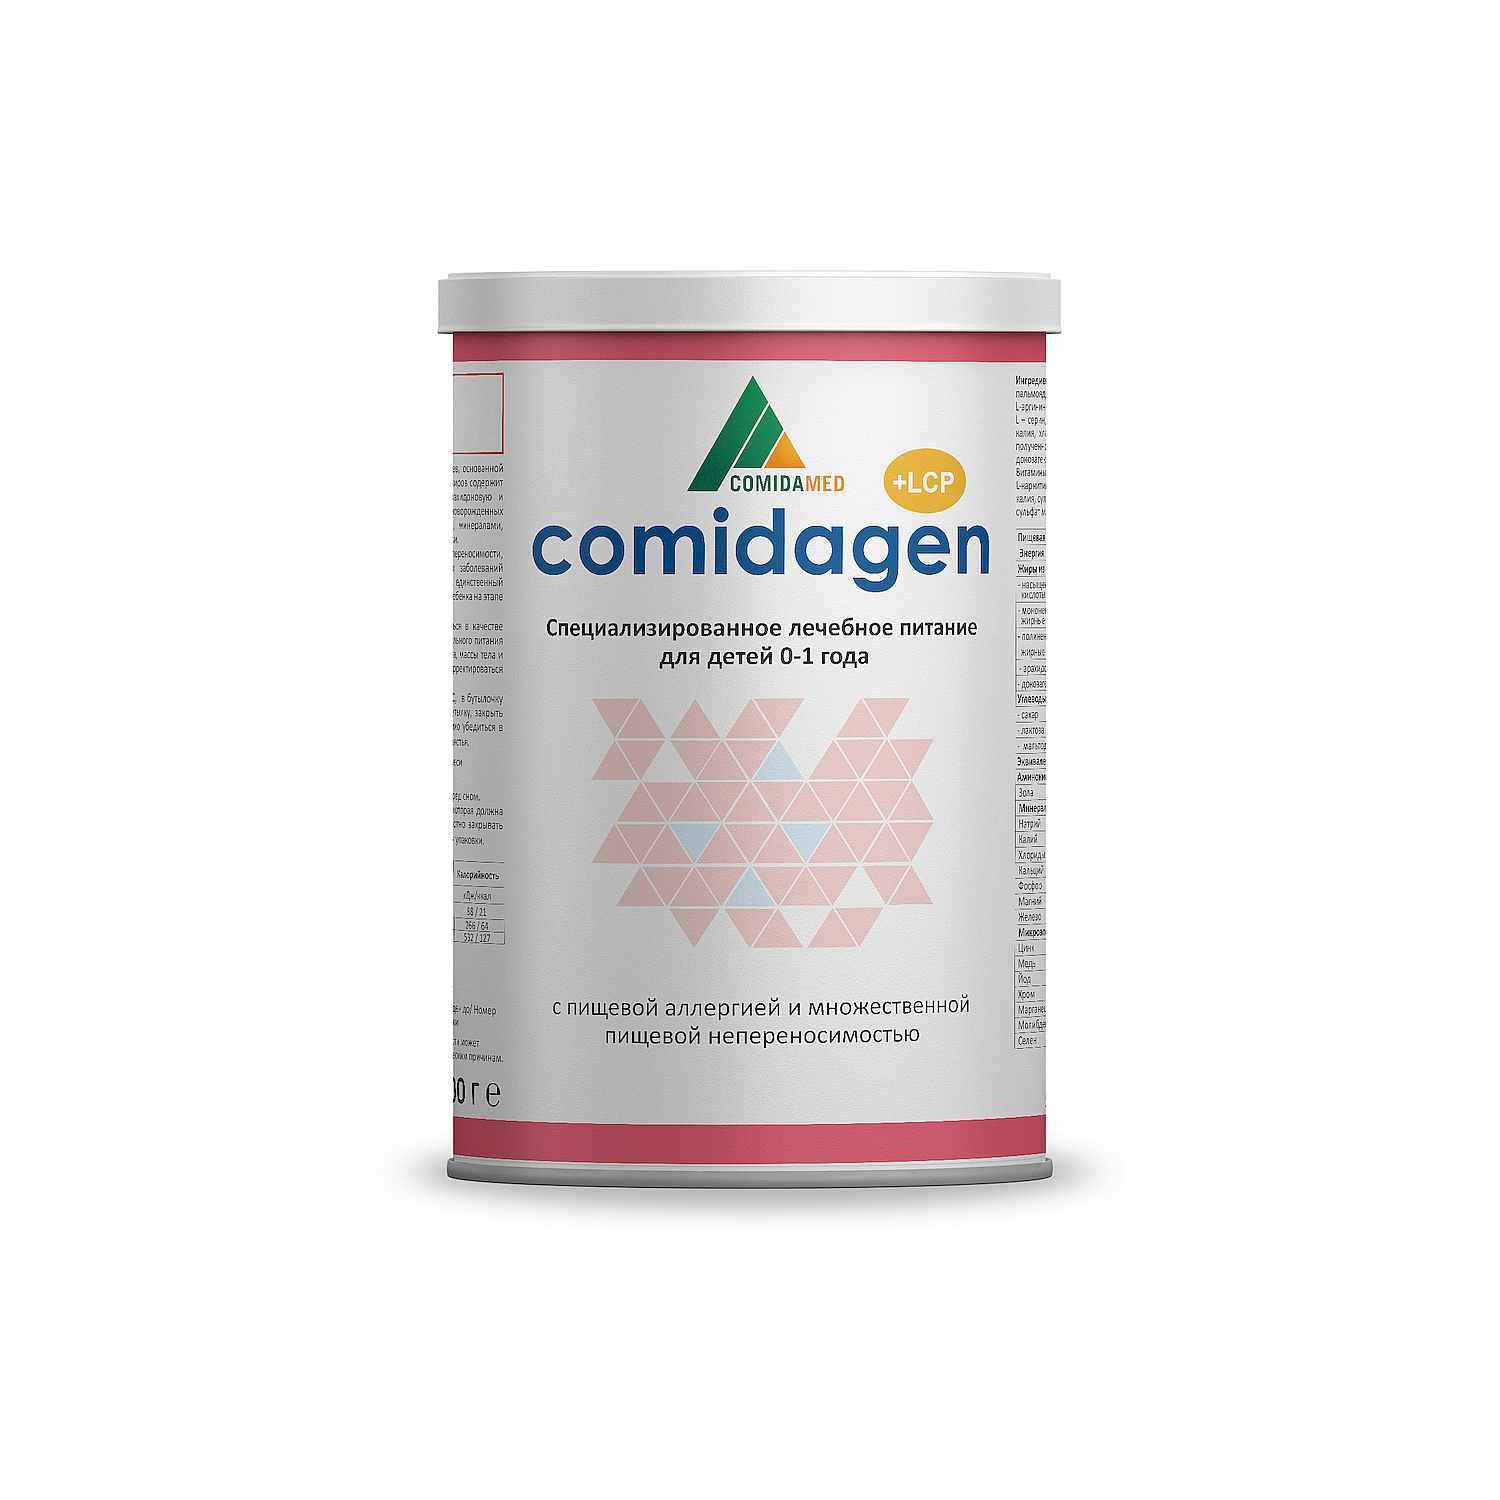 Лечебная смесь Schaer Comidagen питание для детей 0-1 года 400 гр - фото 1